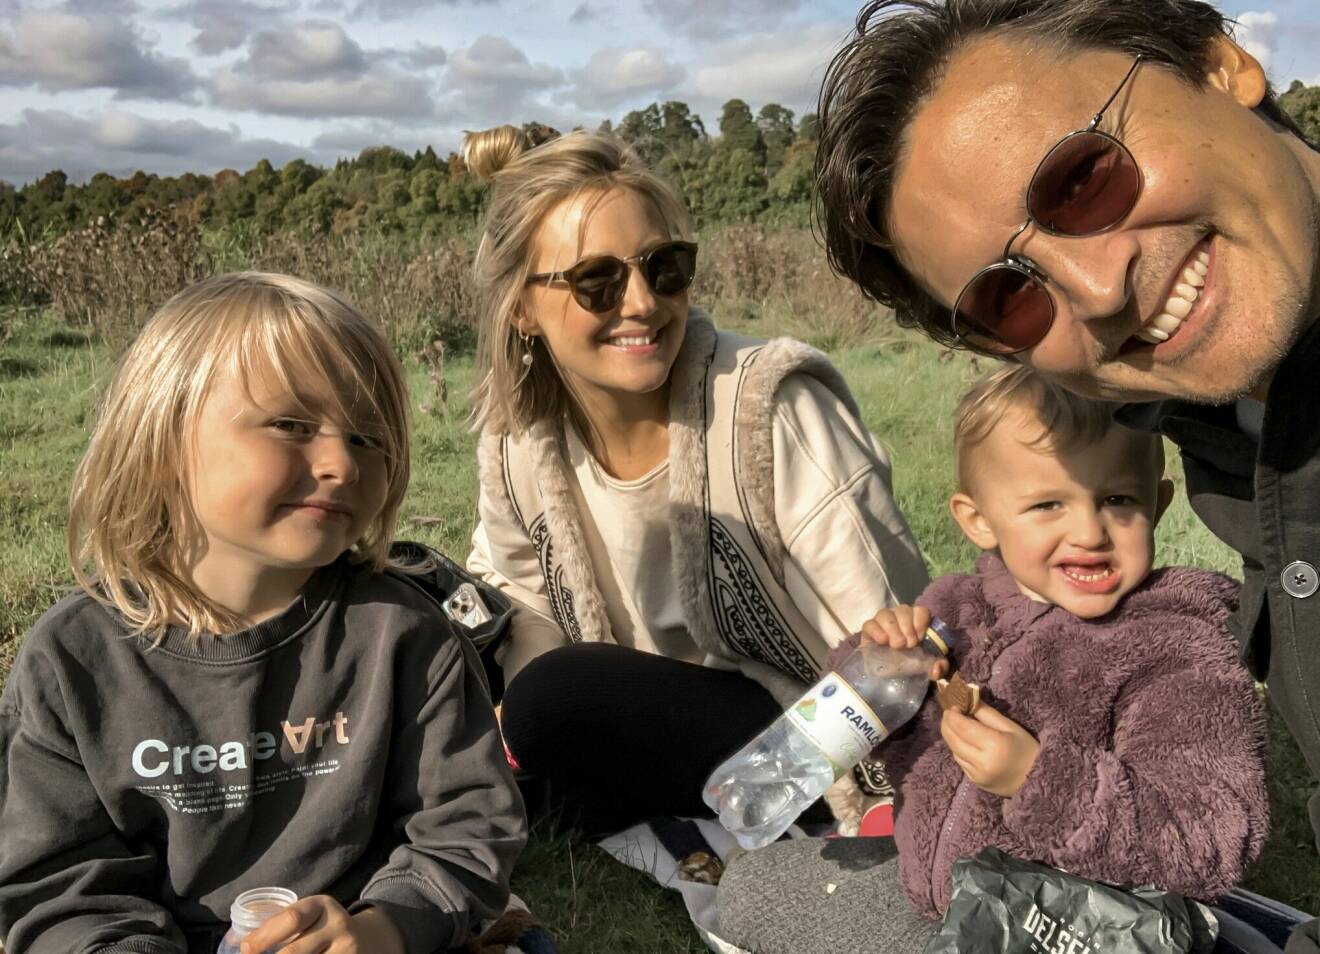 Influencern Vanja Wikström och hennes sambo Niklas Malmkvist med deras barn Iggy och Tintin en somrig dag utomhus.